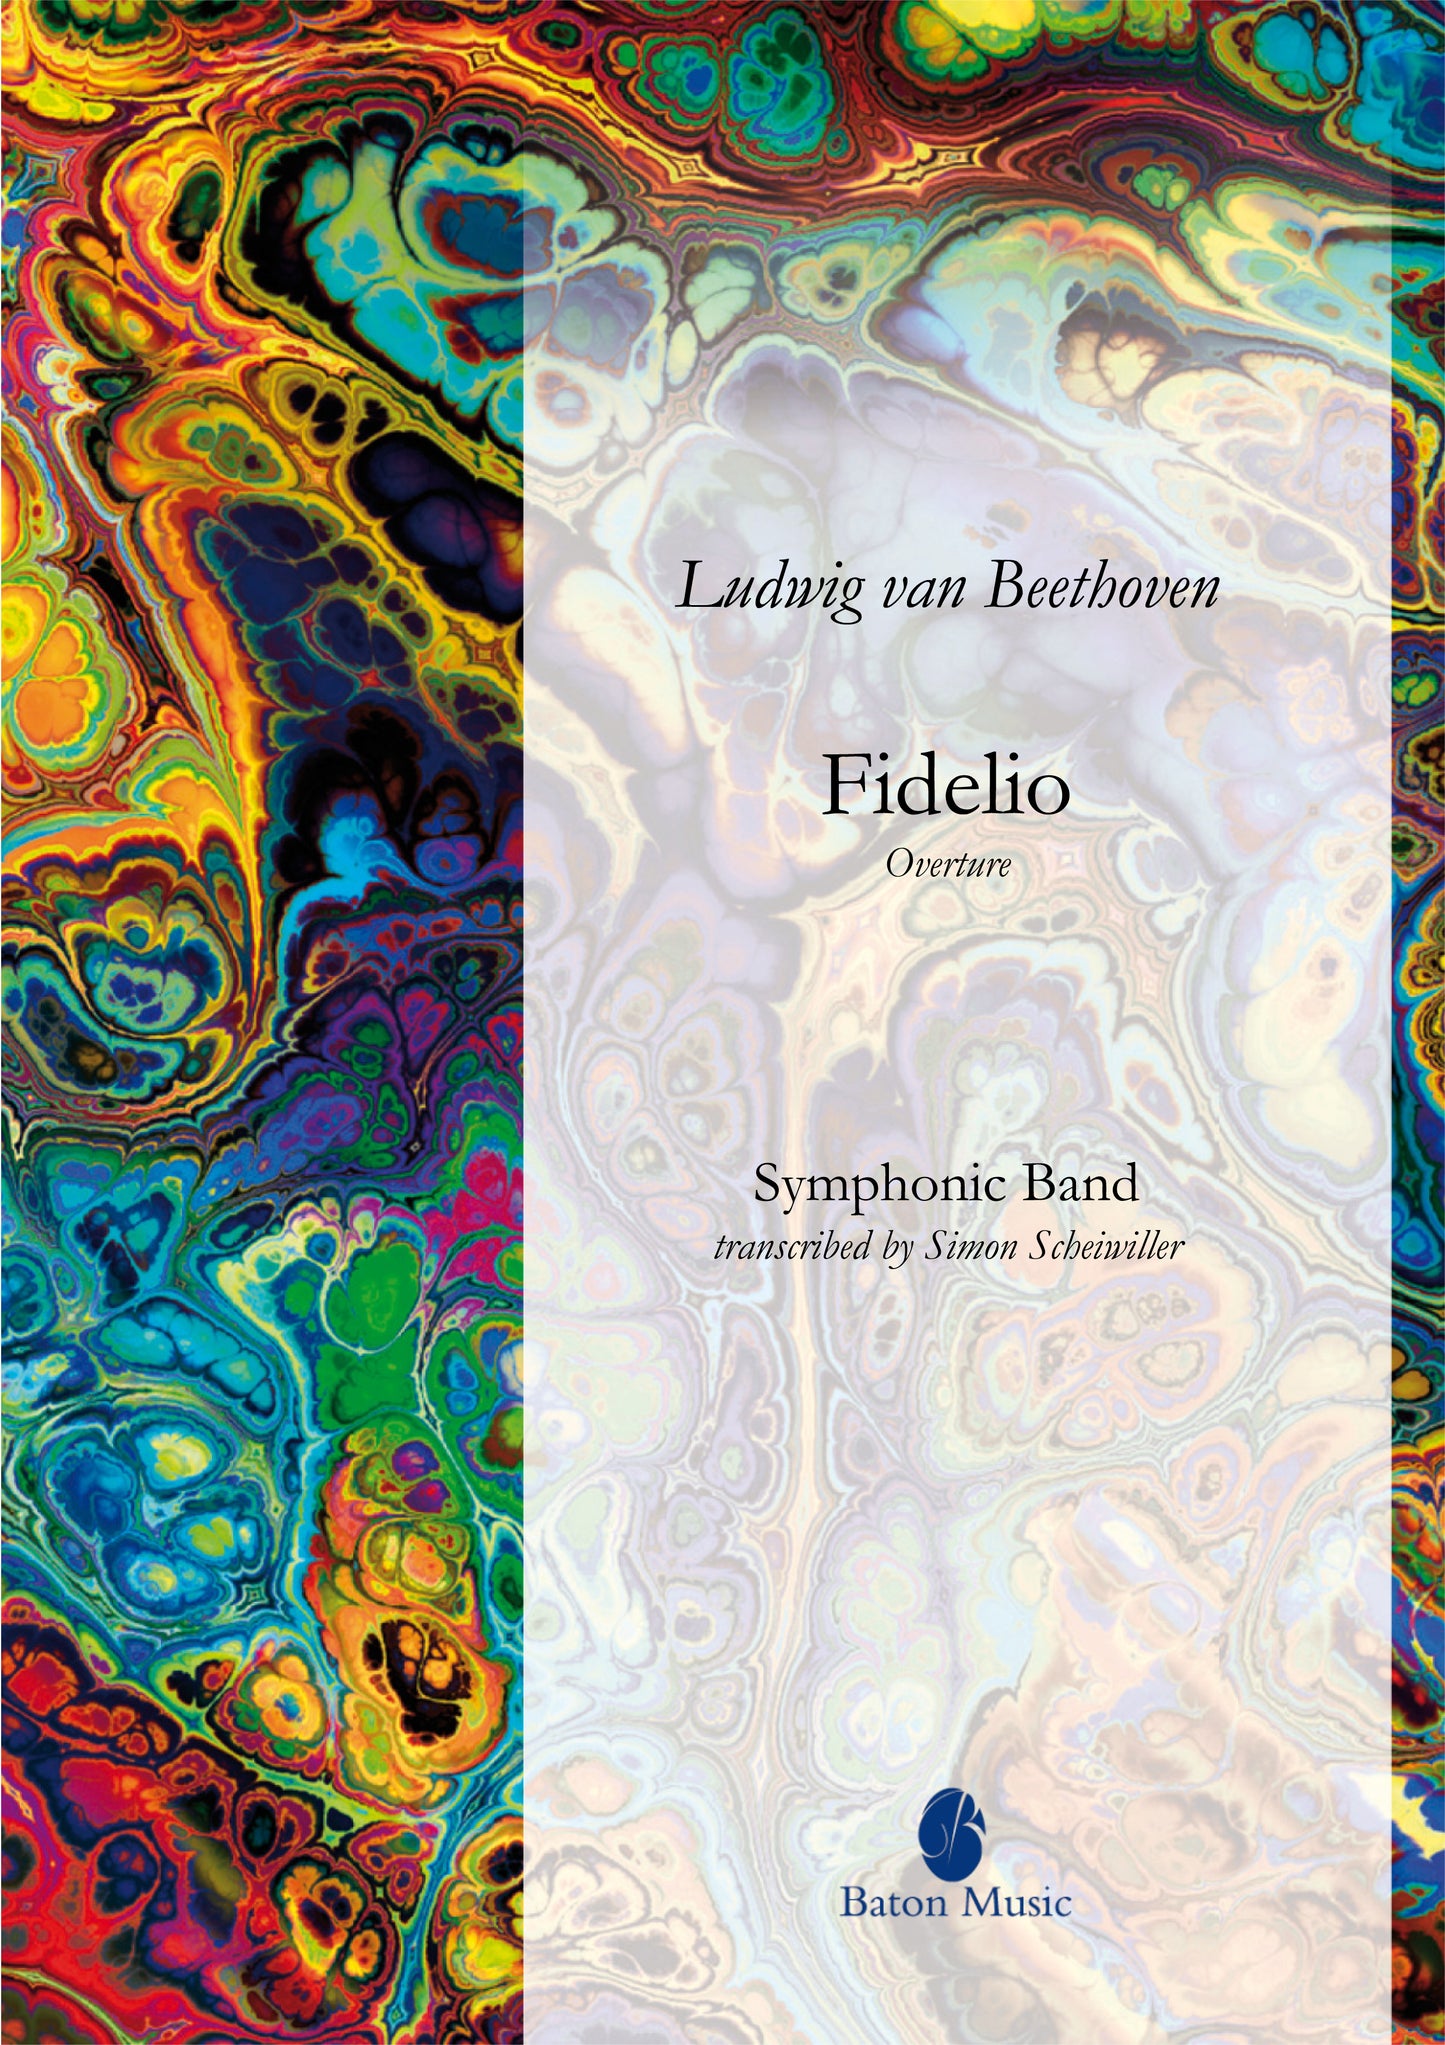 Fidelio (Overture) - Beethoven